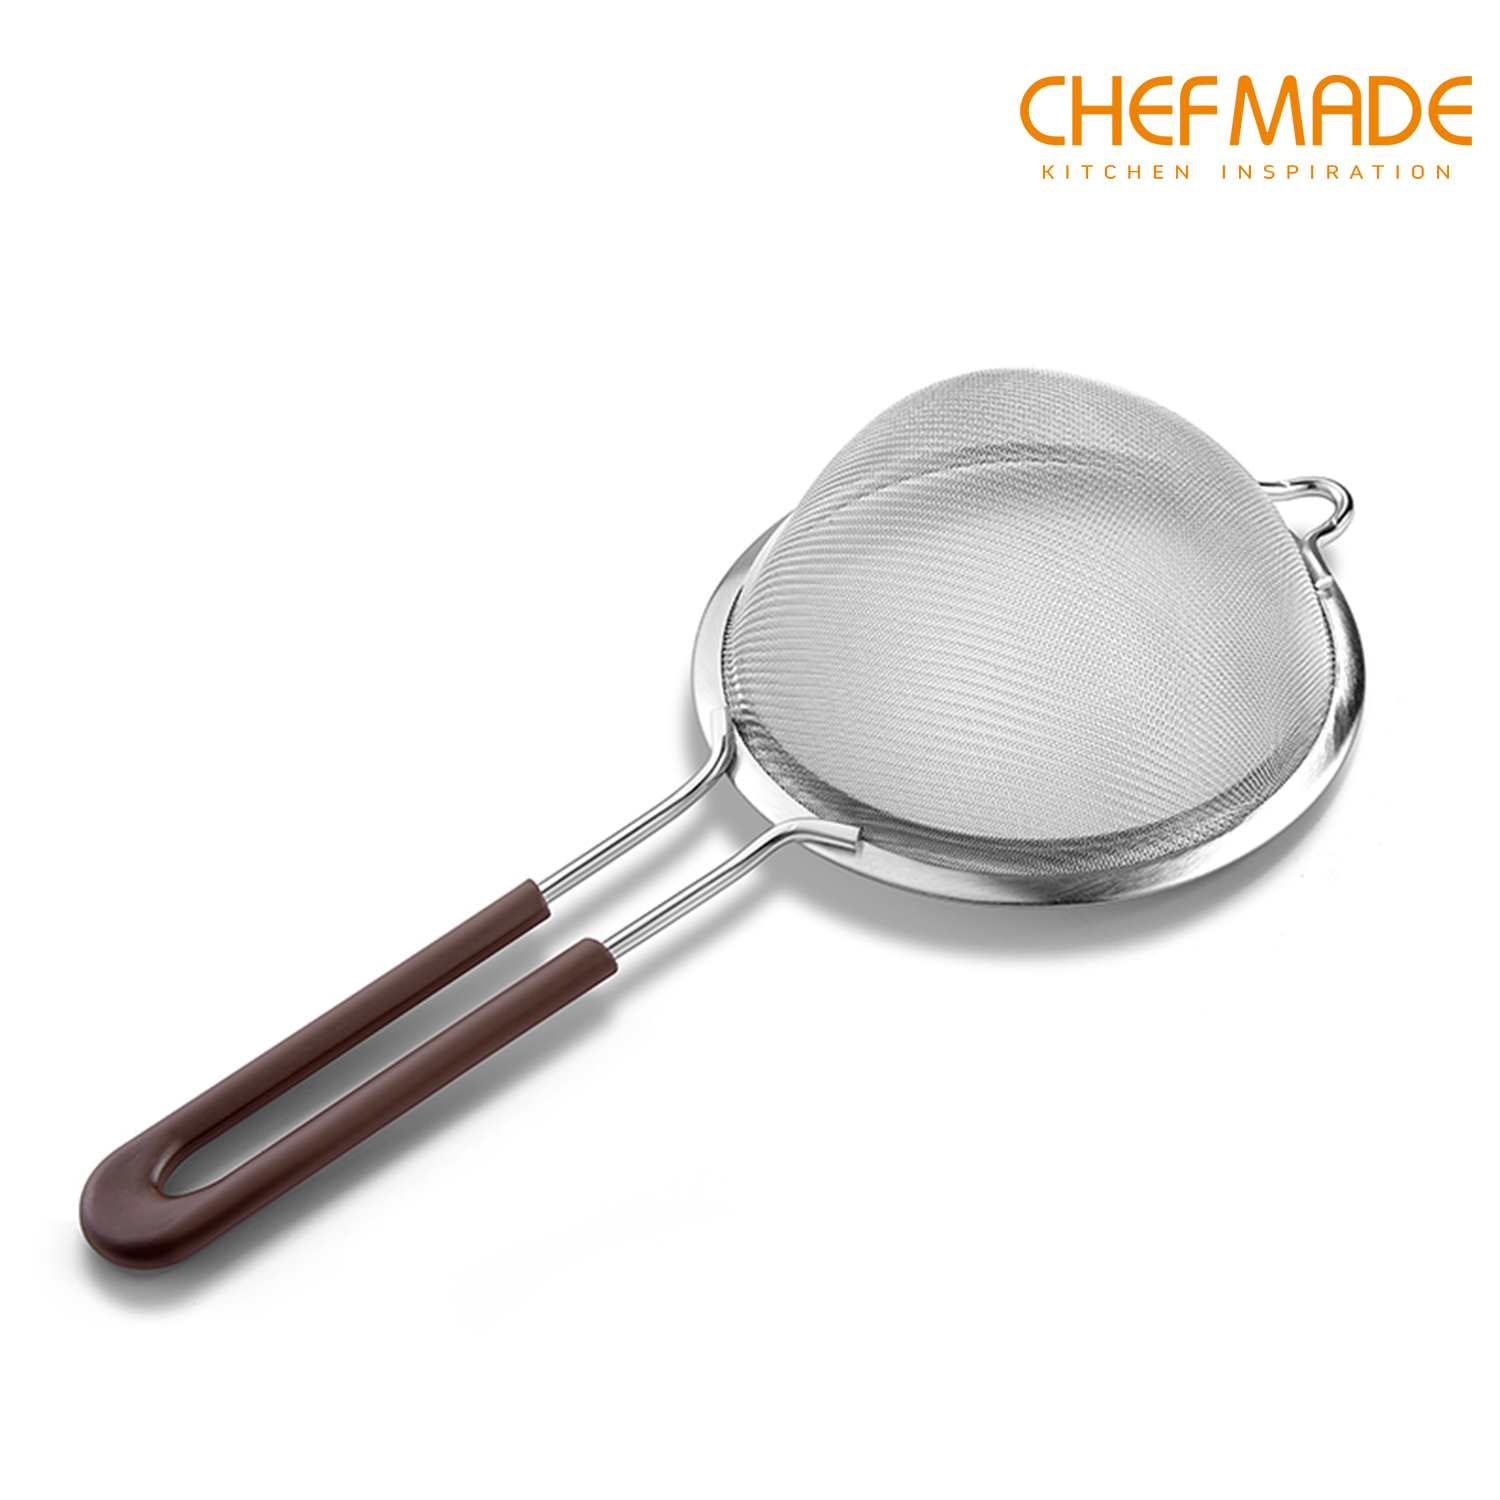 CHEFMADE 16cm S/S Flour Sieve (WK9245)